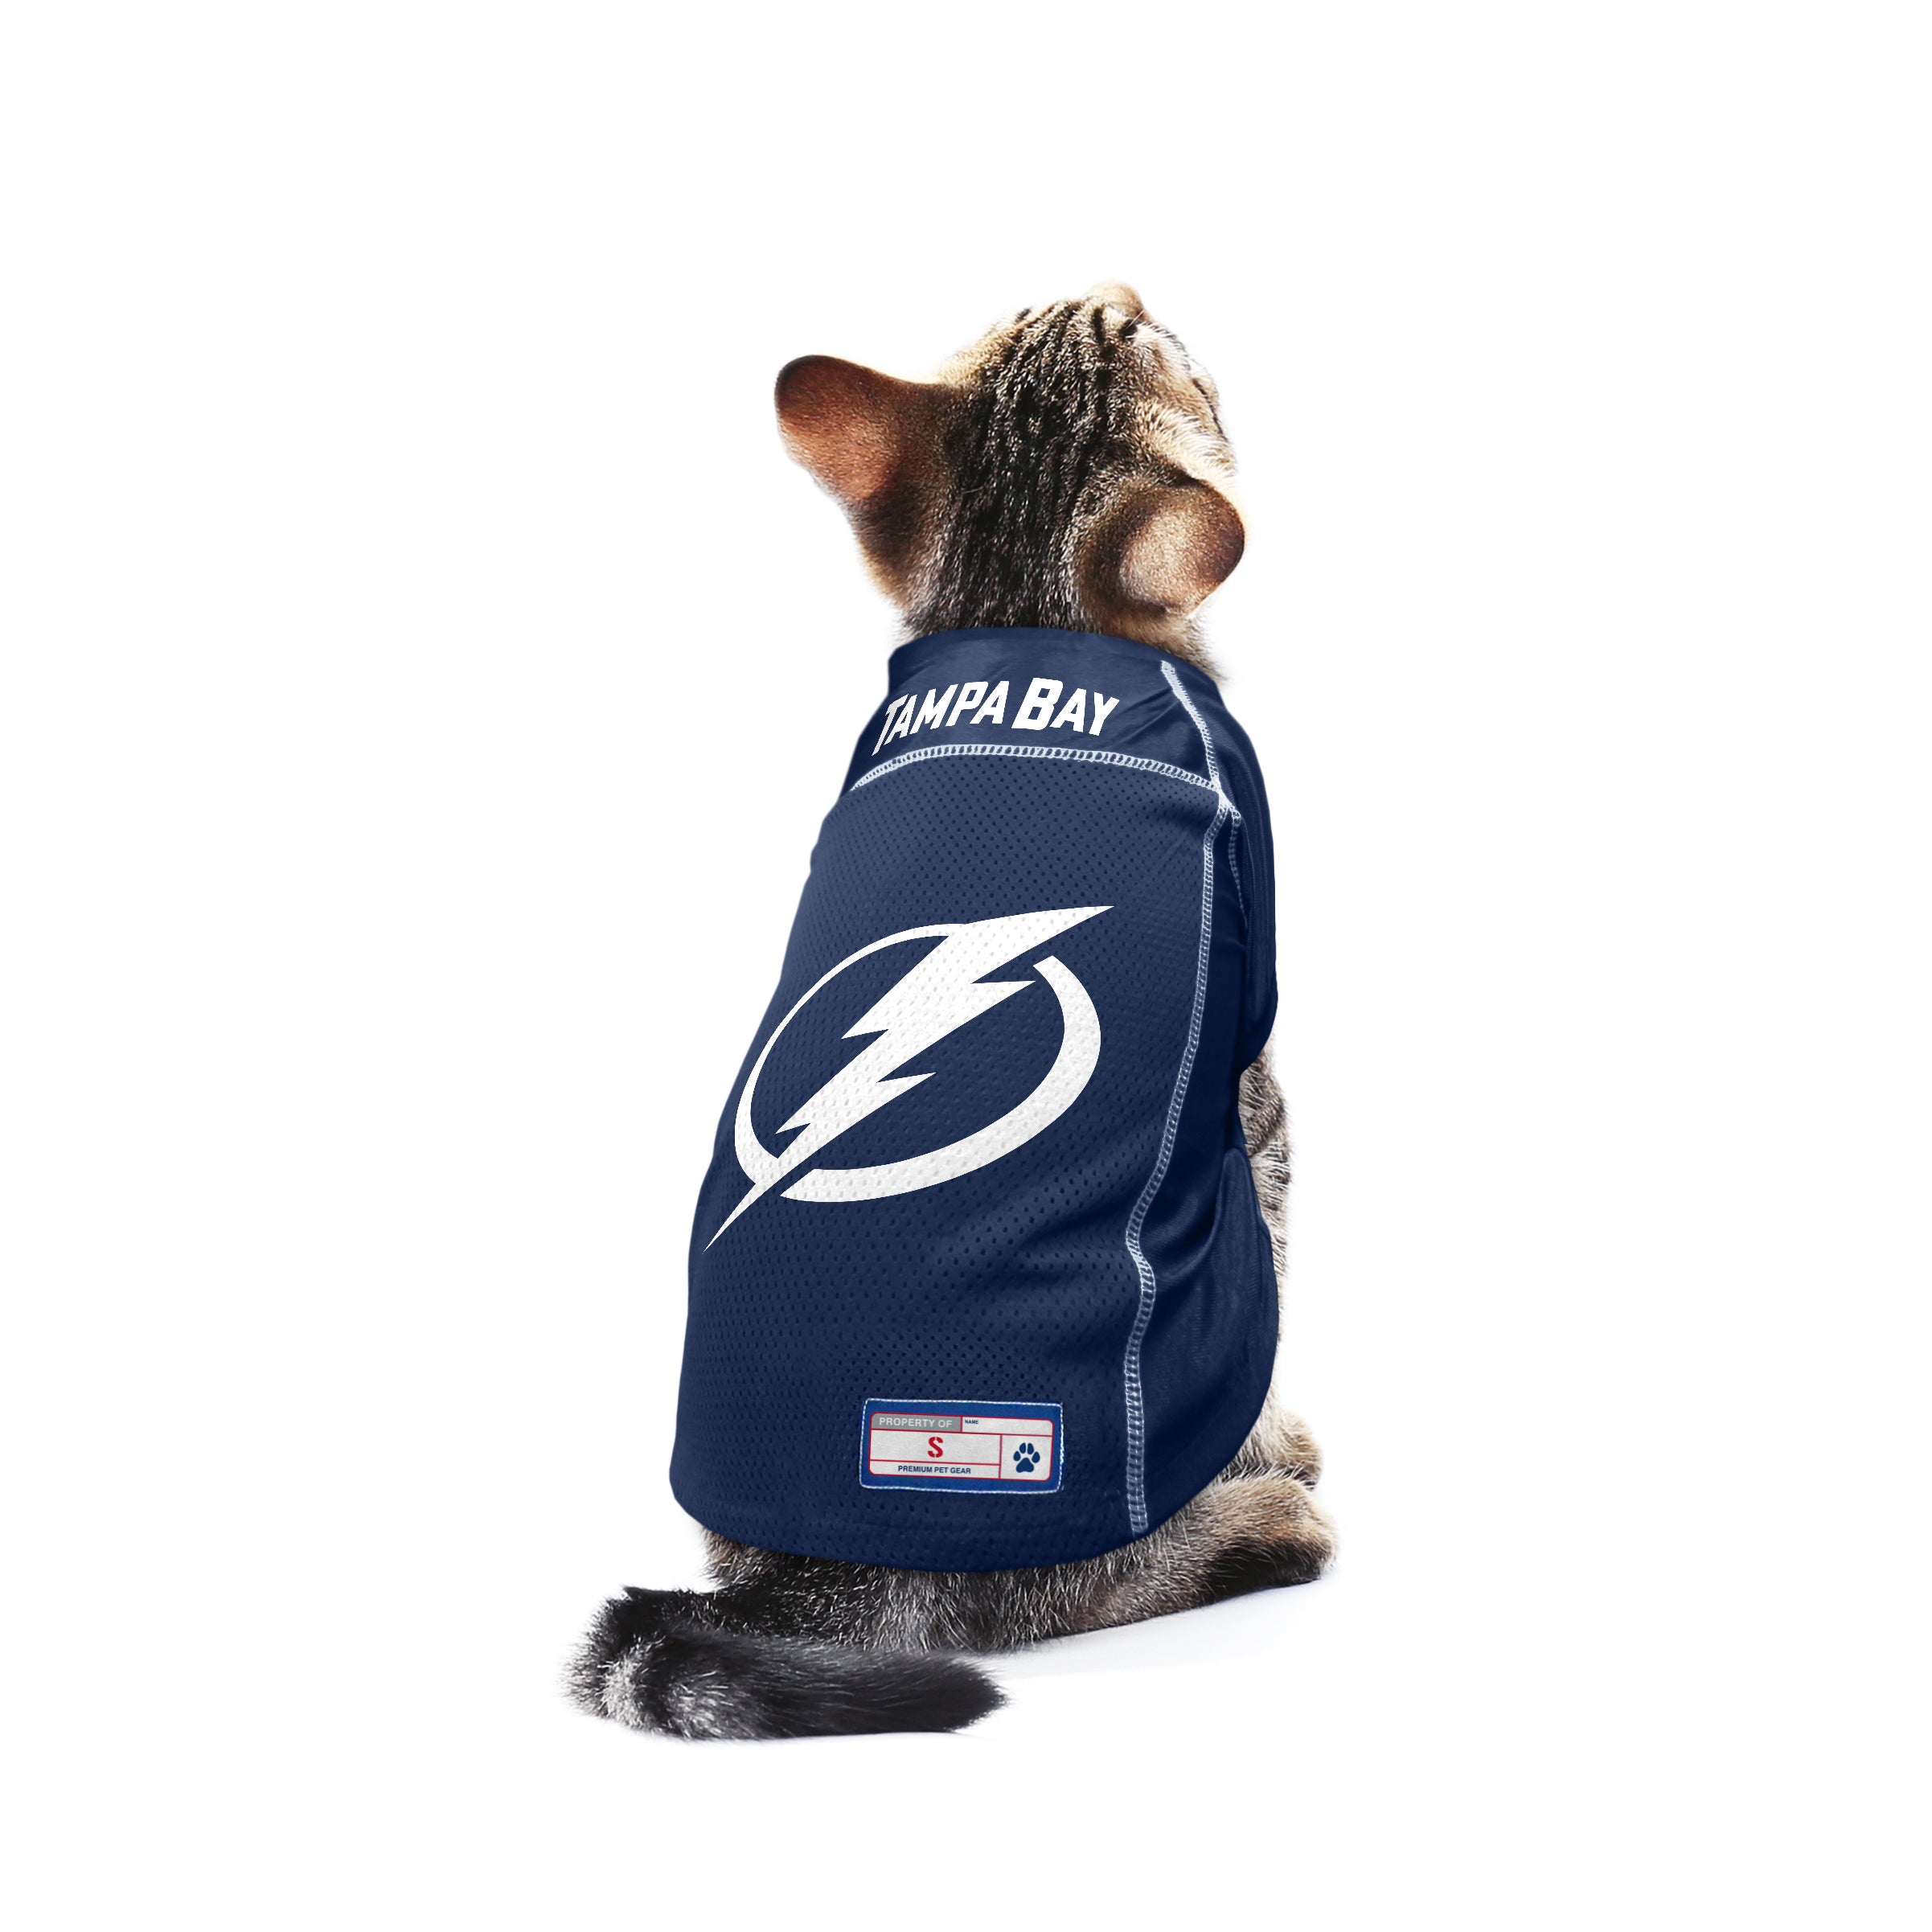 Tampa Bay Lightning Pet Jersey - Large